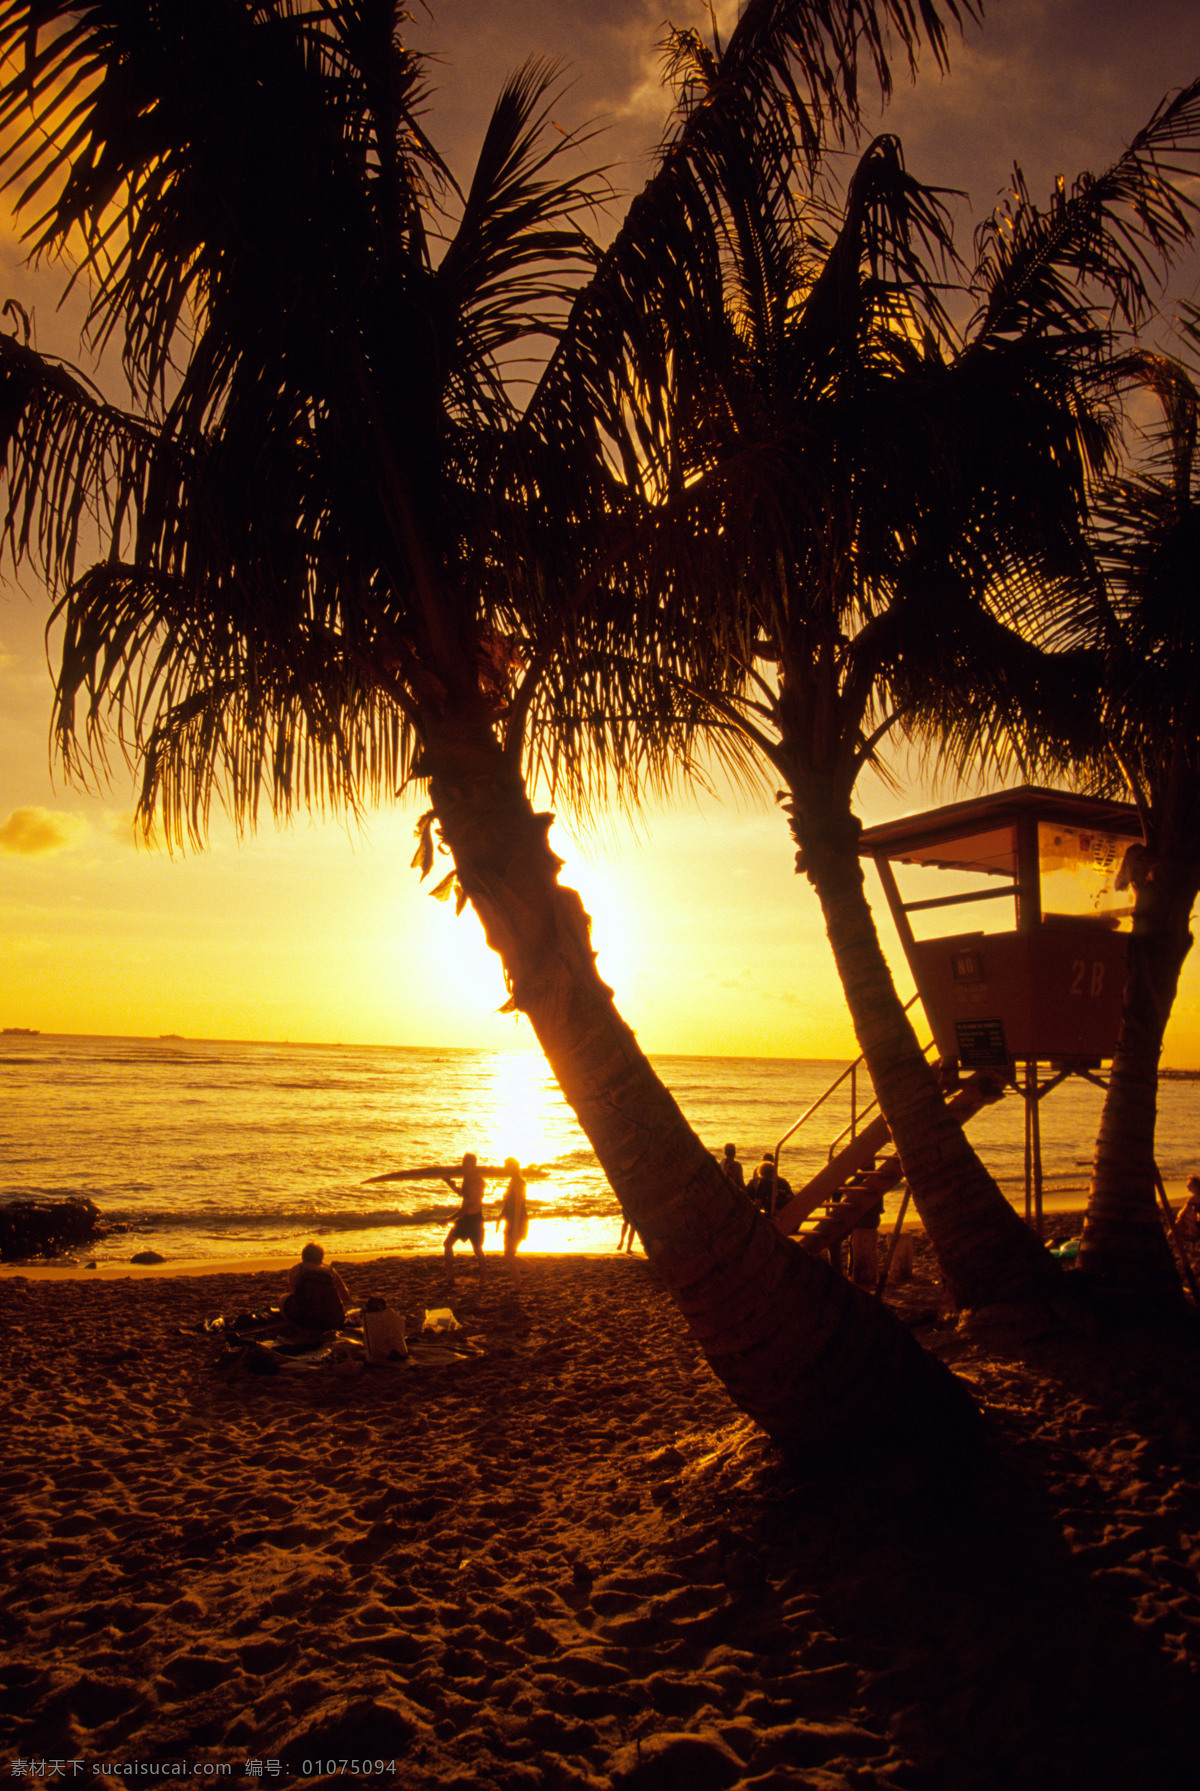 黄昏 时 海边 风景 美丽海滩 海边风景 太平洋 海岸风光 落日 夕阳 沙滩 海滩 大海 海洋 海平面 椰子 椰树 度假 旅游景点 海景 景色 美景 摄影图 高清图片 大海图片 风景图片